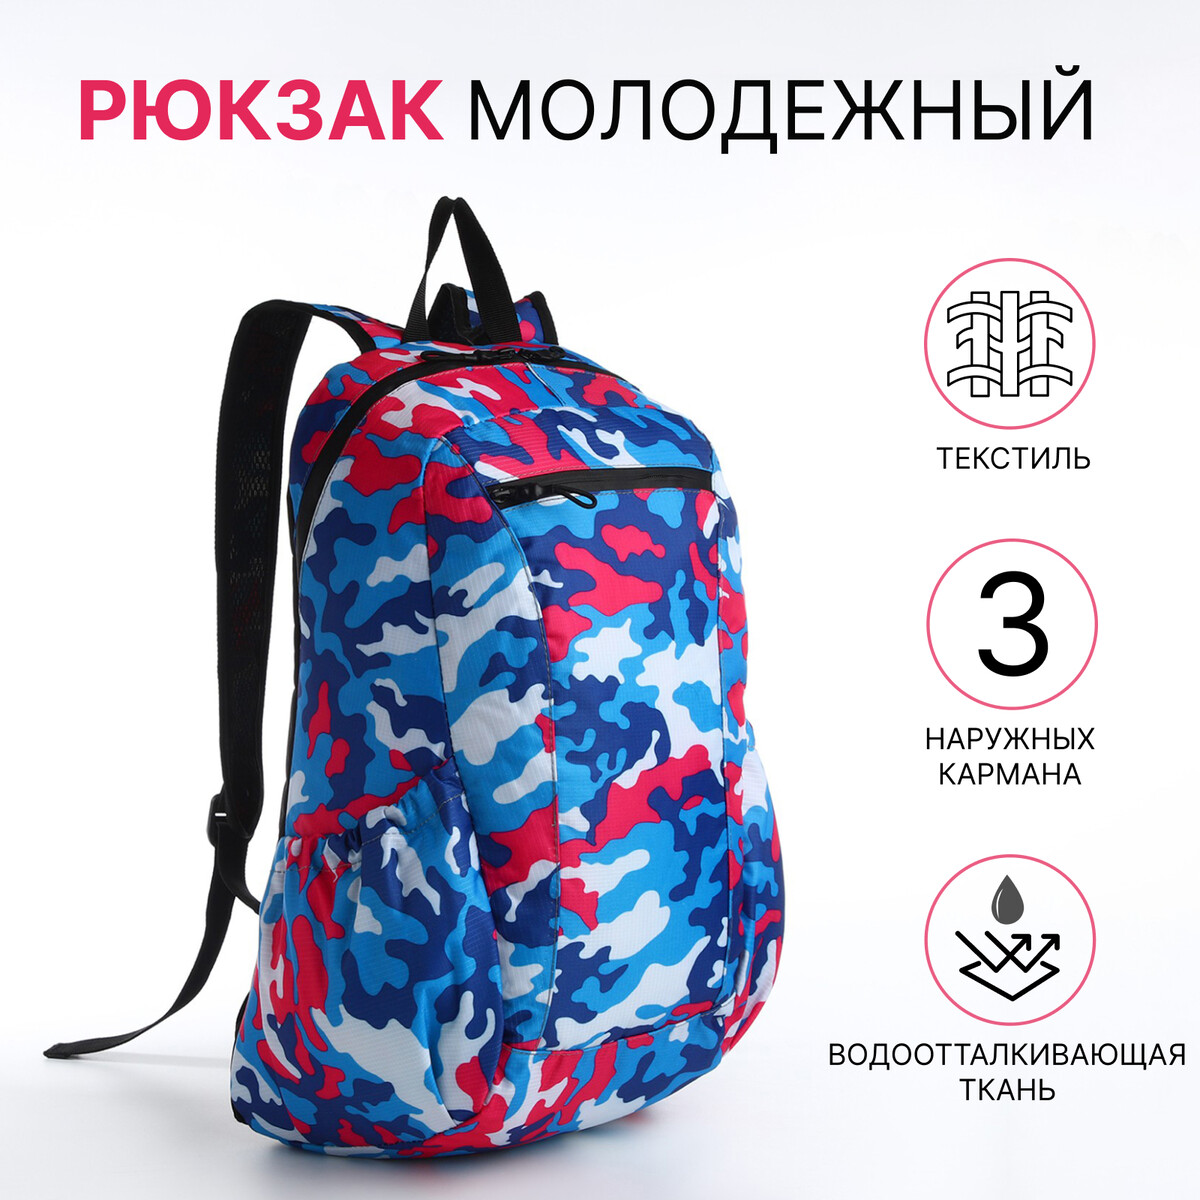 Рюкзак молодежный, водонепроницаемый на молнии, 3 кармана, цвет голубой/розовый рюкзак школьный из текстиля на молнии 3 кармана розовый